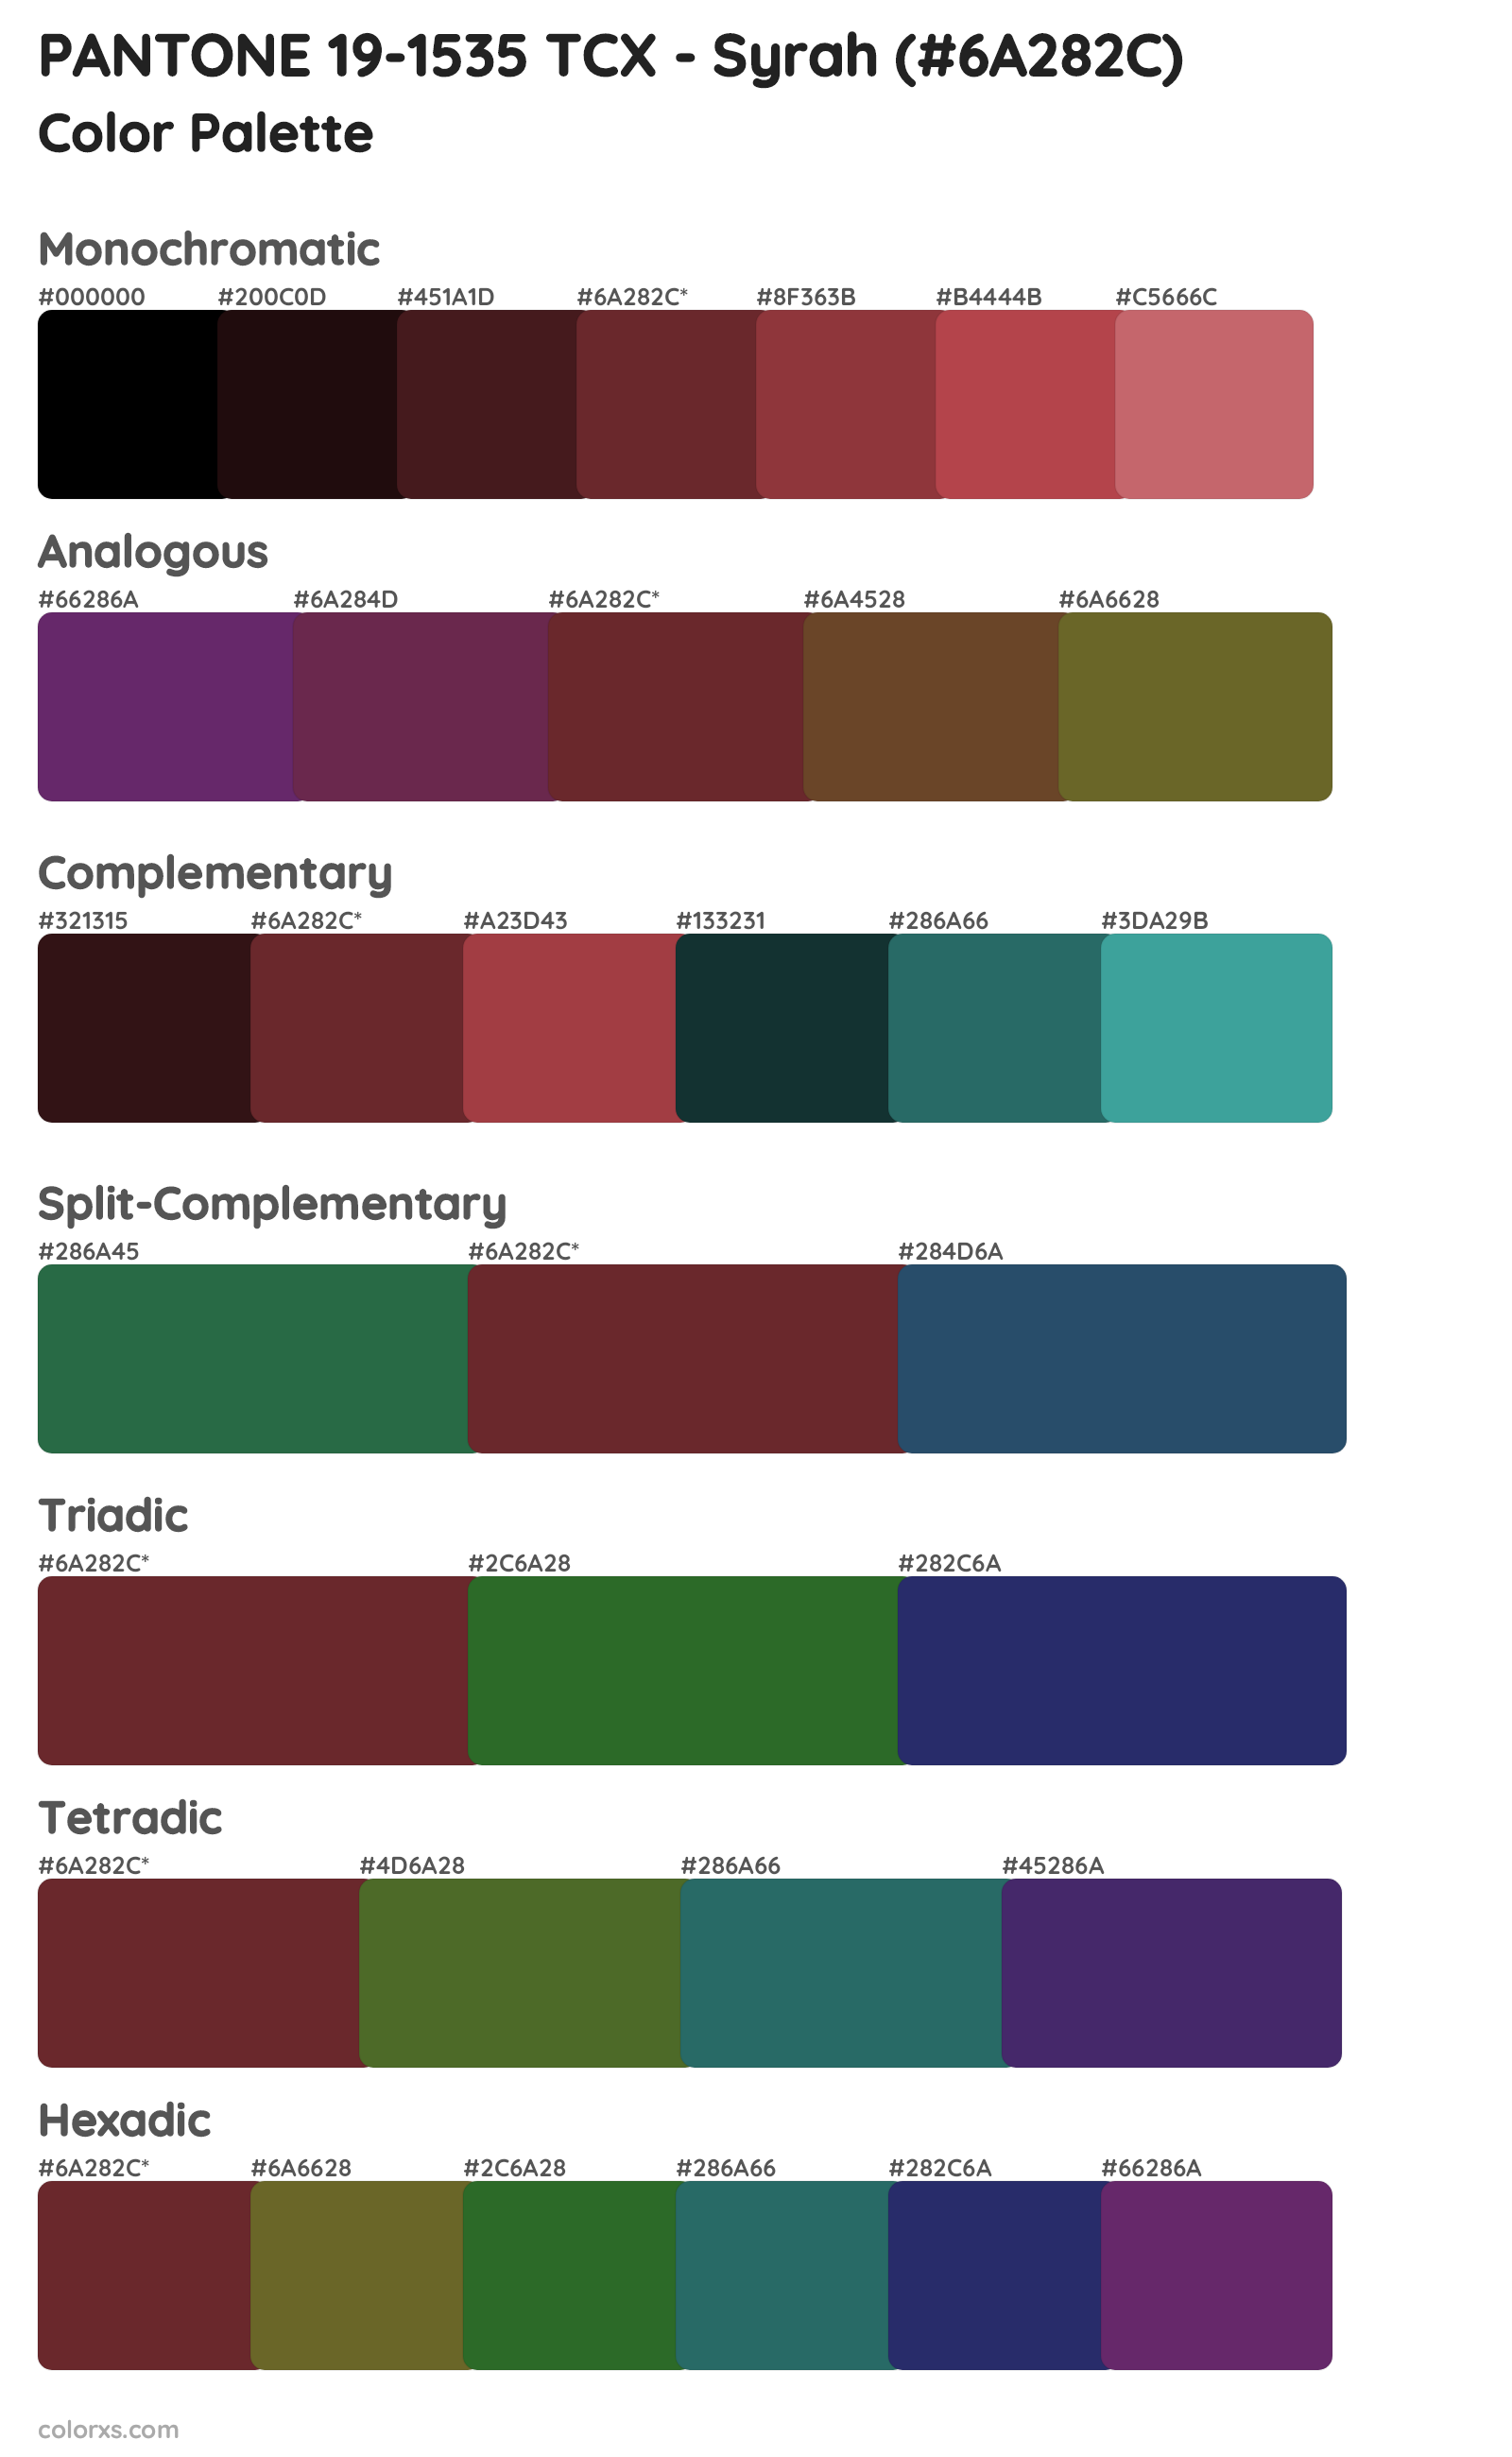 PANTONE 19-1535 TCX - Syrah Color Scheme Palettes